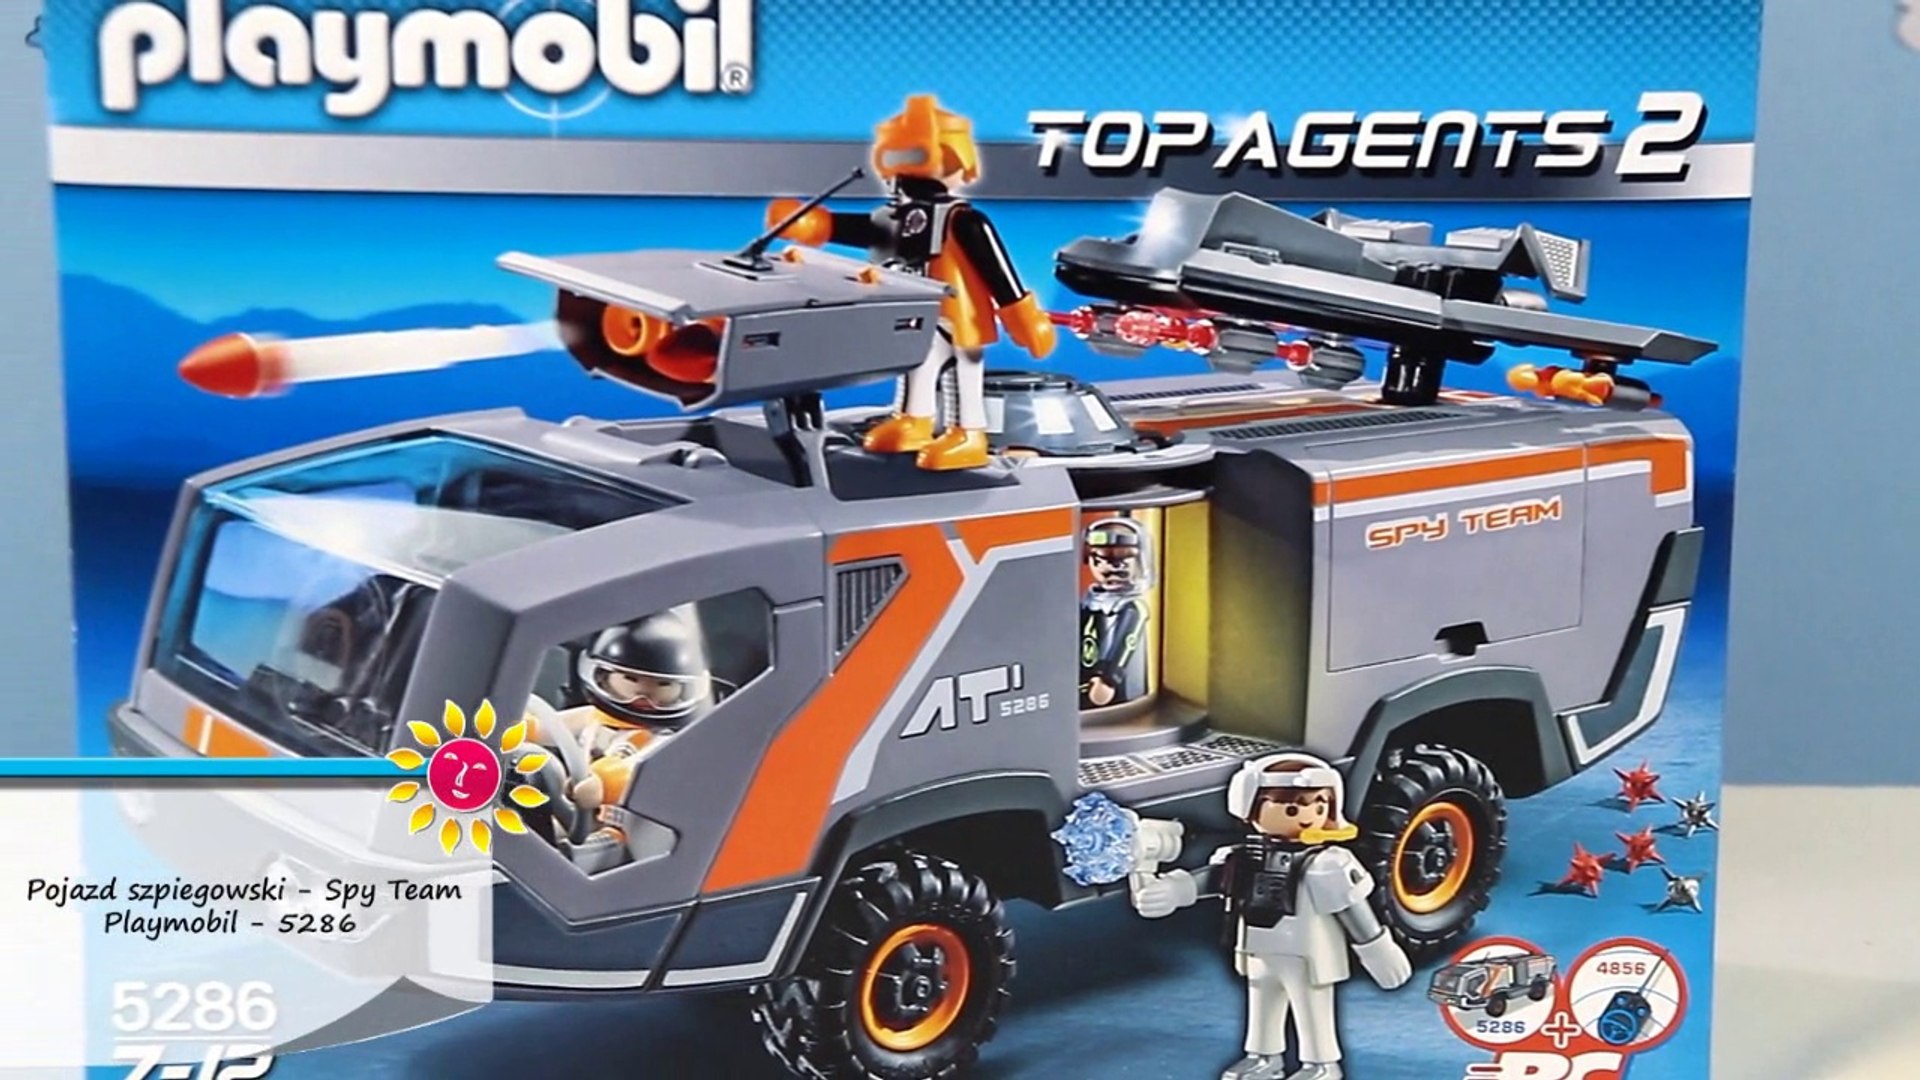 Spy Team Commander Truck / Pojazd Szpiegowski 5286 - Top Agents 2 -  Playmobil - Recenzja - video Dailymotion